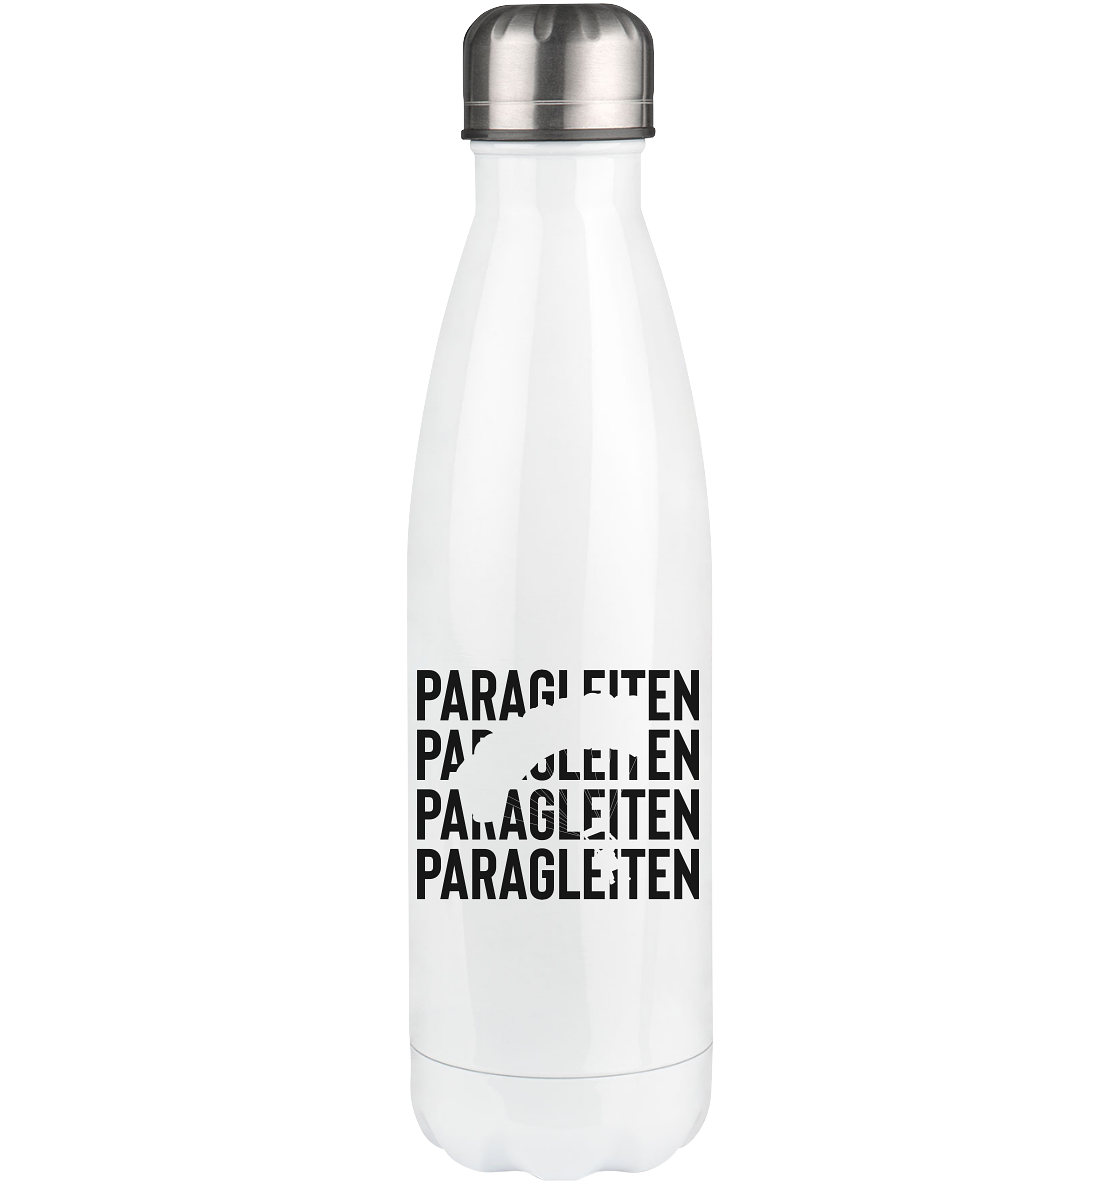 Paragleiten - Edelstahl Thermosflasche berge 500ml